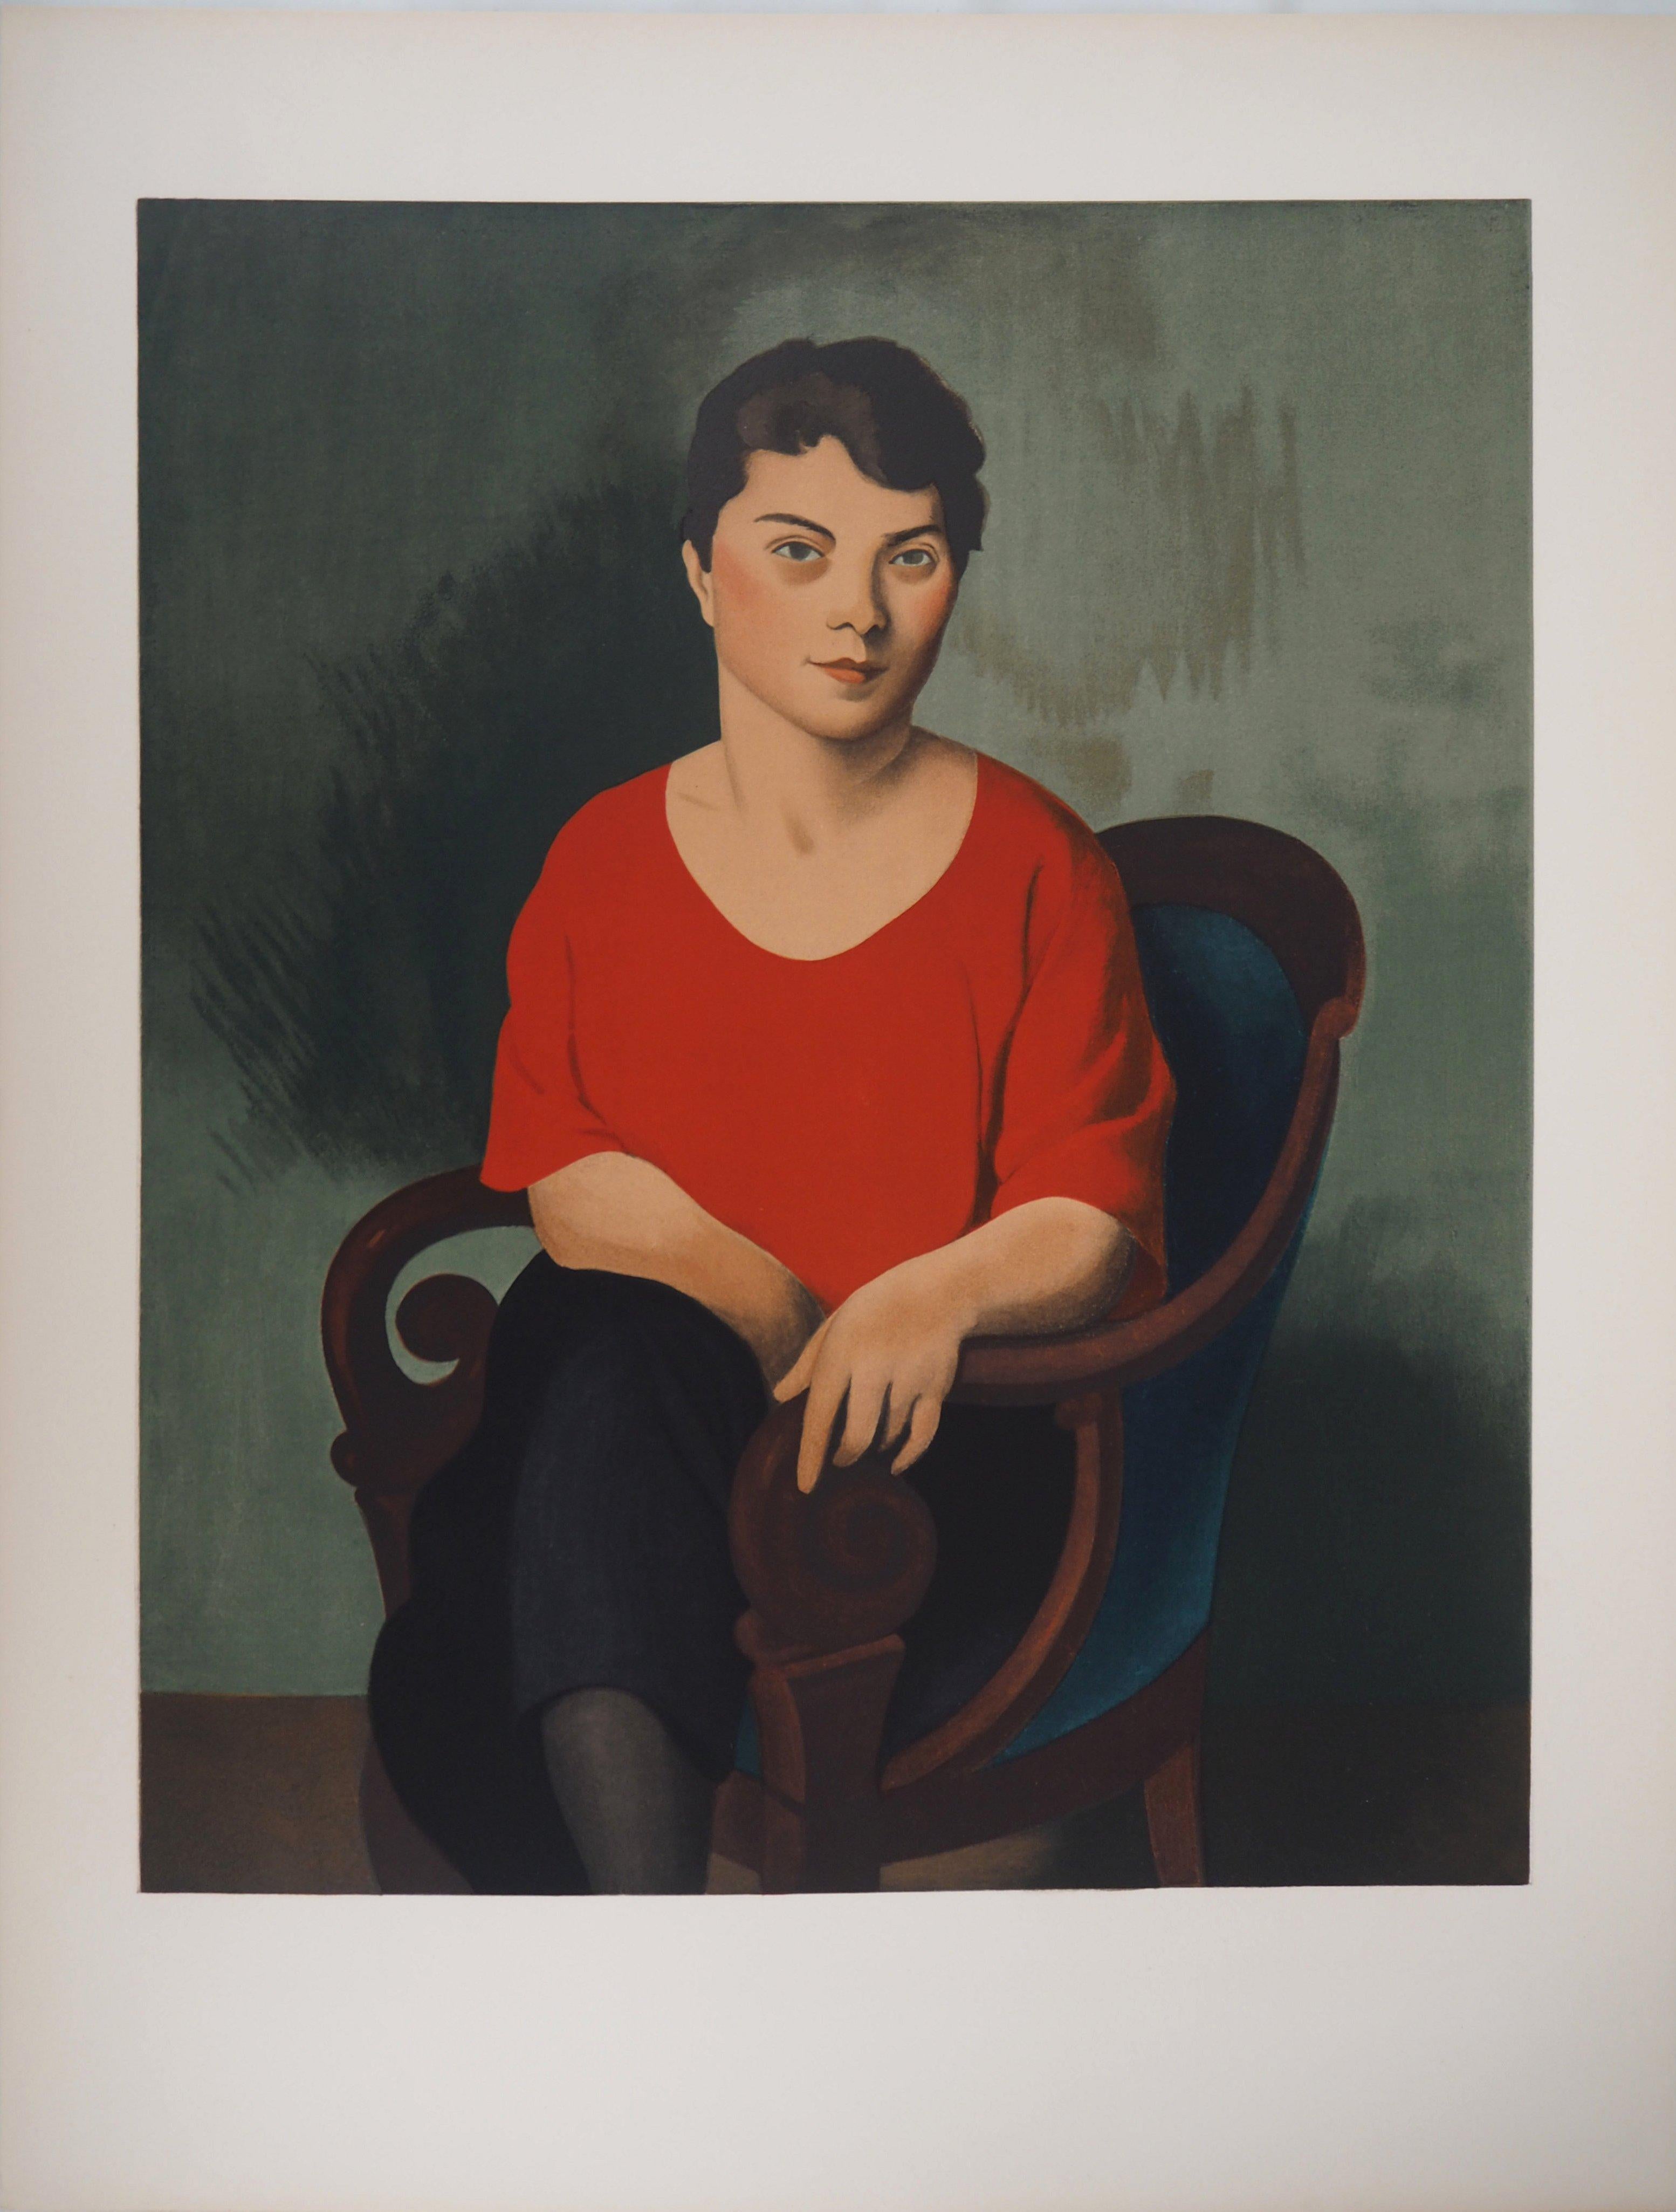 Femme avec un pull rouge - Lithographie, Mourlot - Print de Roger de la Fresnaye